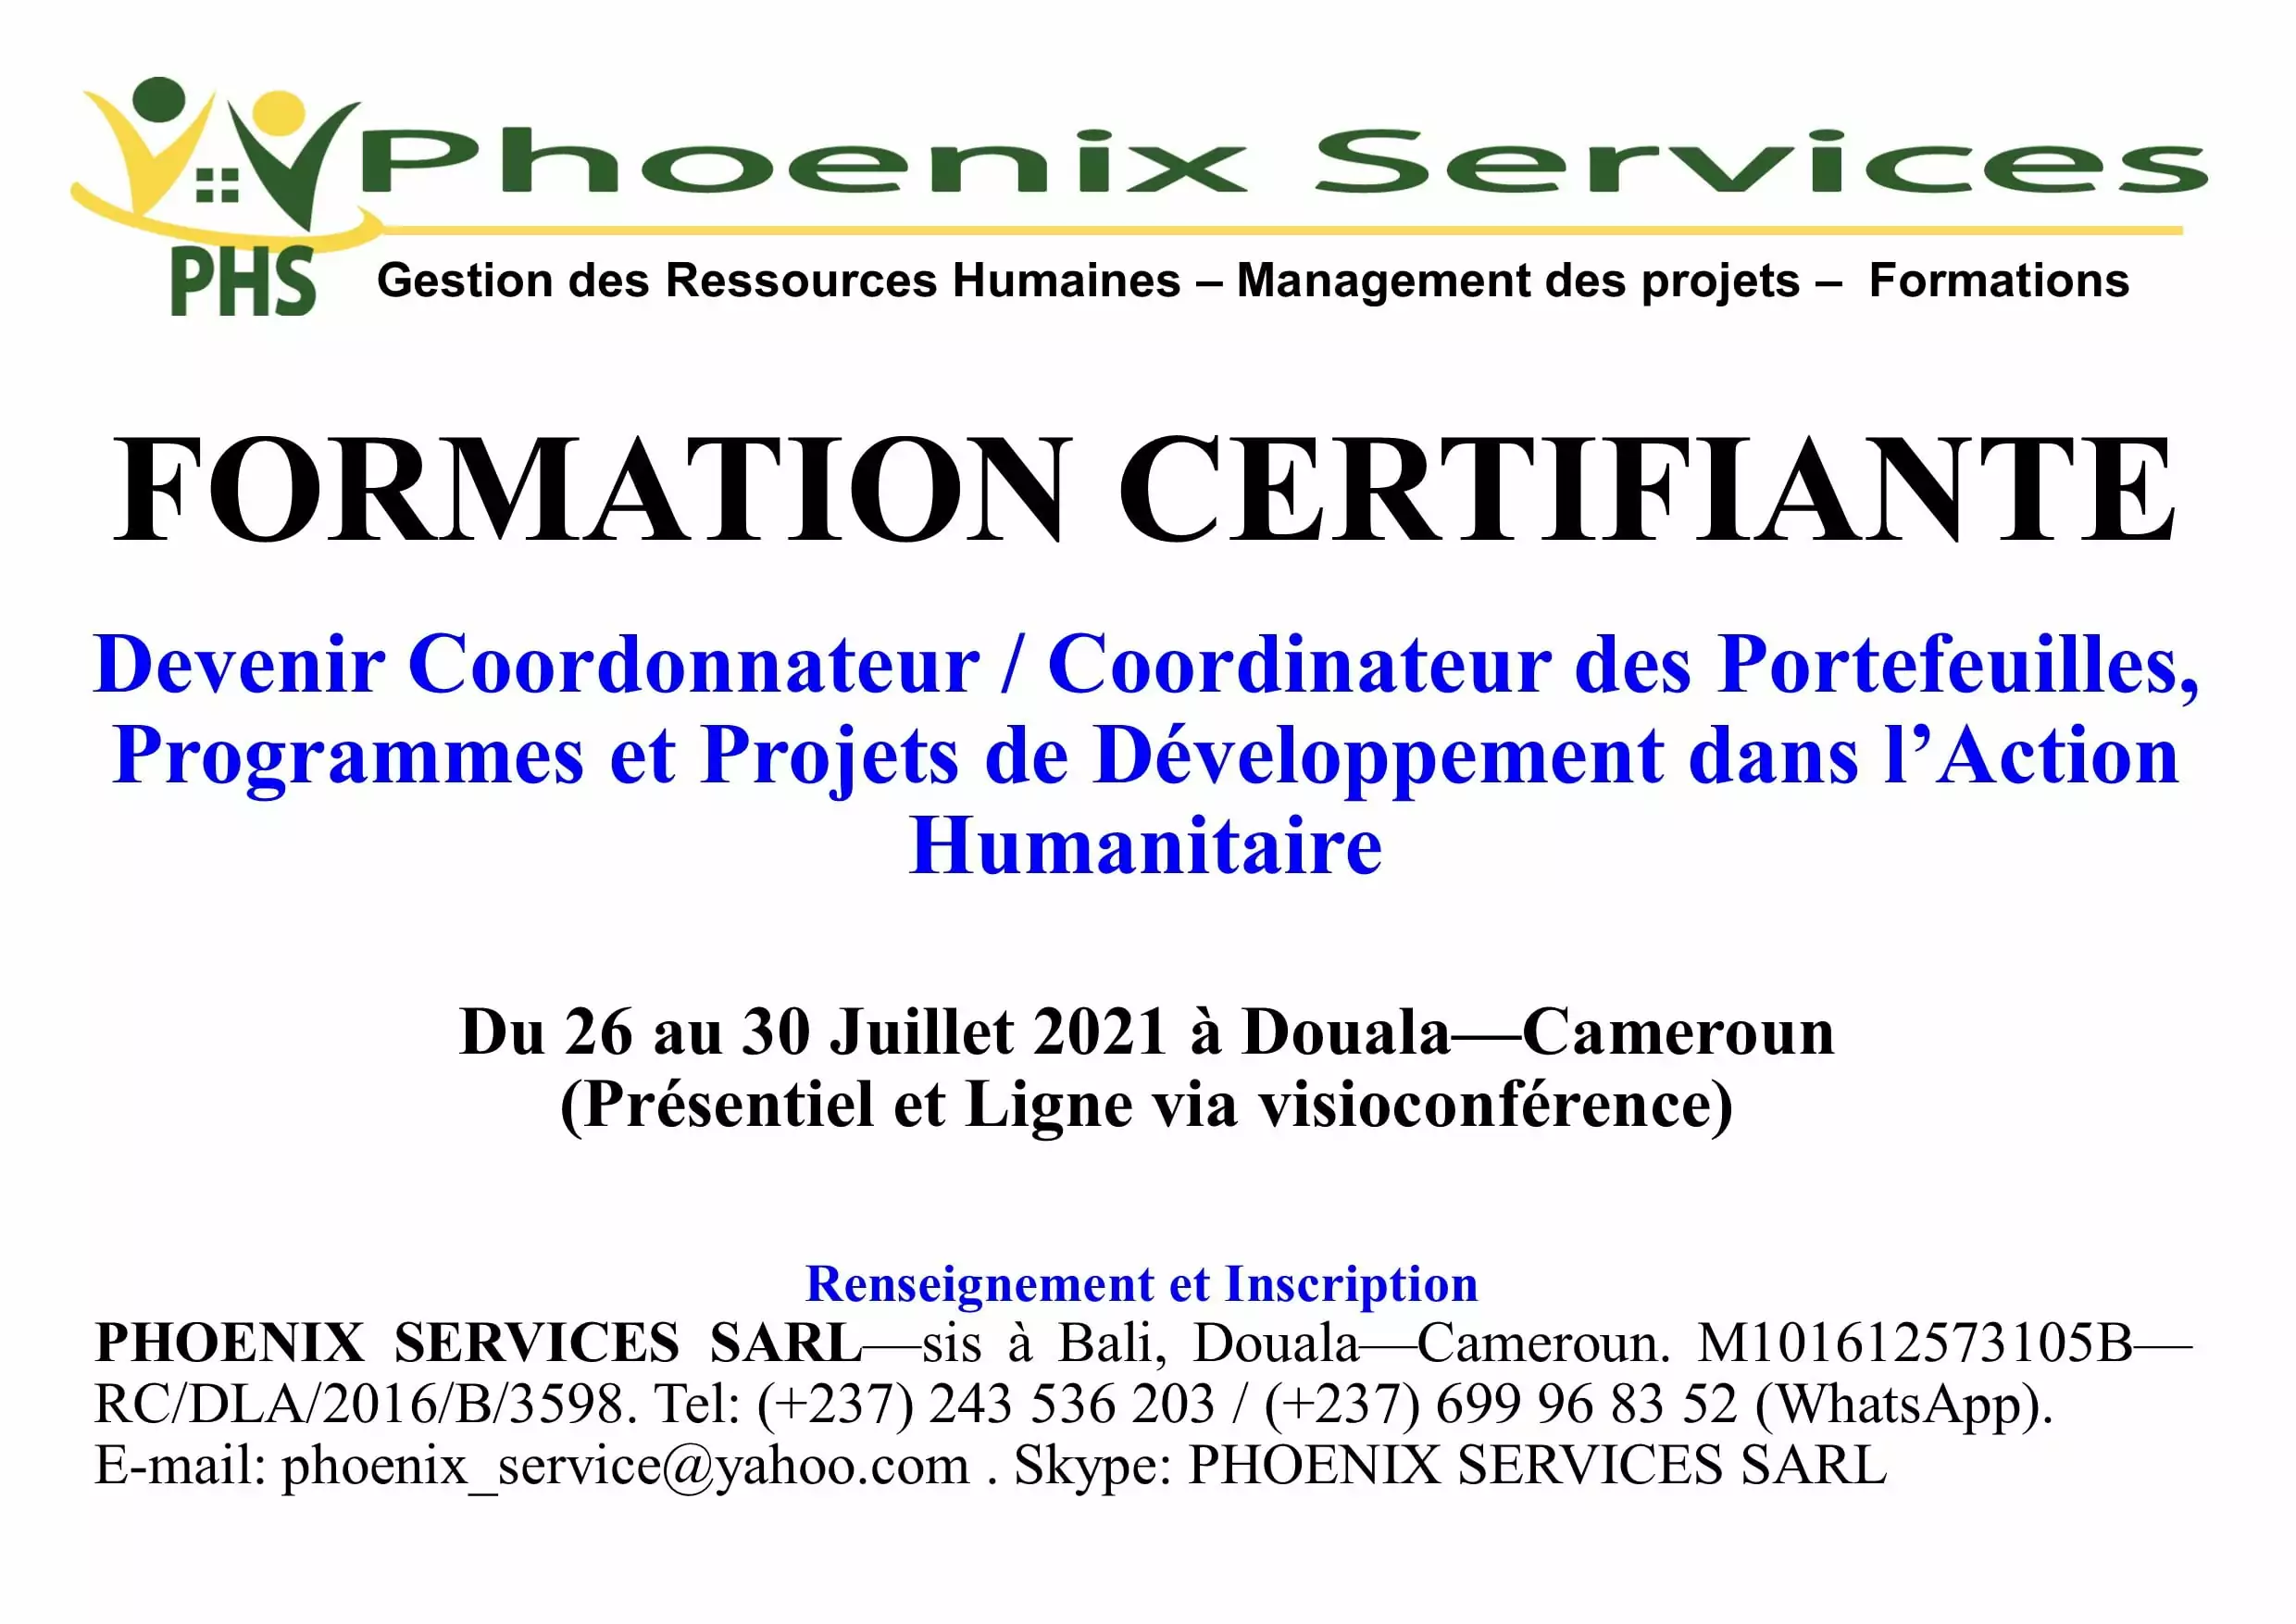 Formation Certifiante : Devenir coordonnateur / Coordinateur des portefeuilles, programmes et projets de développement dans l’action humanitaire